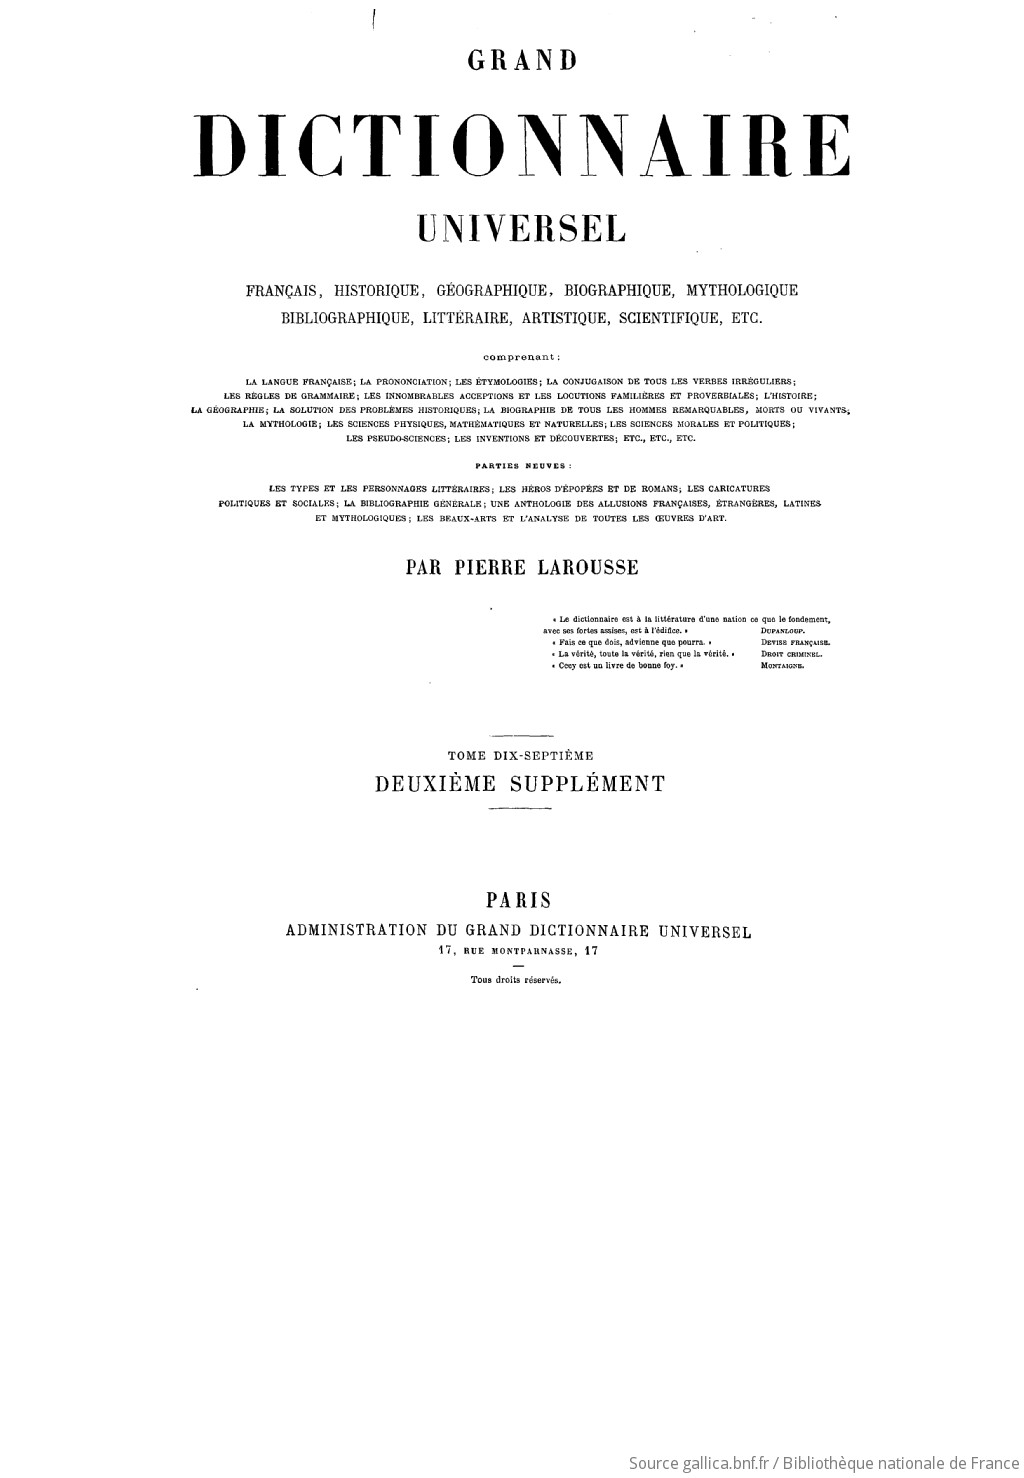 Grand dictionnaire universel du XIXe siècle : français, historique, géographique, mythologique, bibliographique.... T. 17 Suppl. 2 / par M. Pierre Larousse